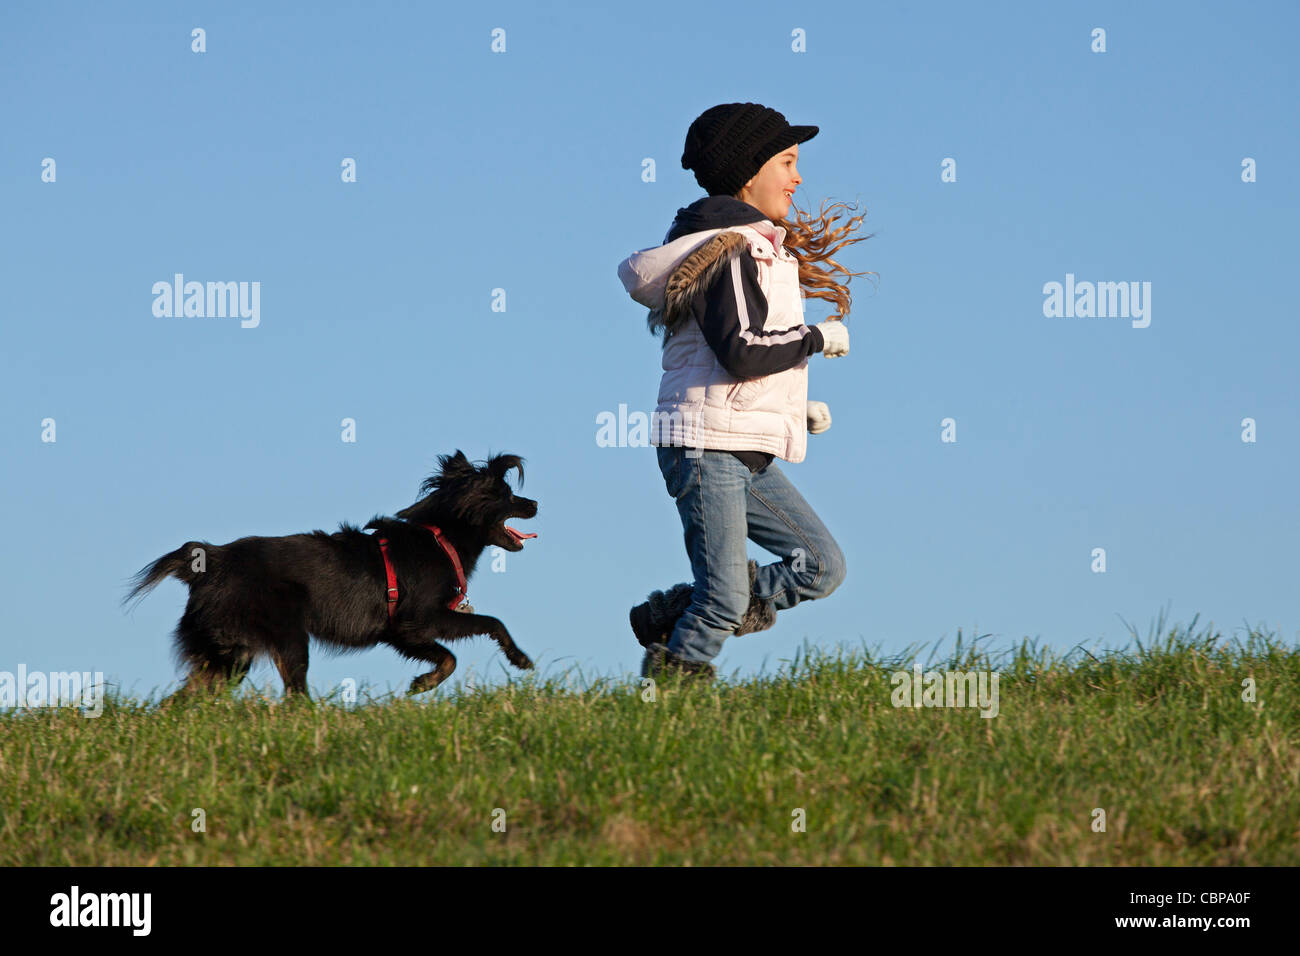 Jeune fille jouant avec un chien Banque D'Images